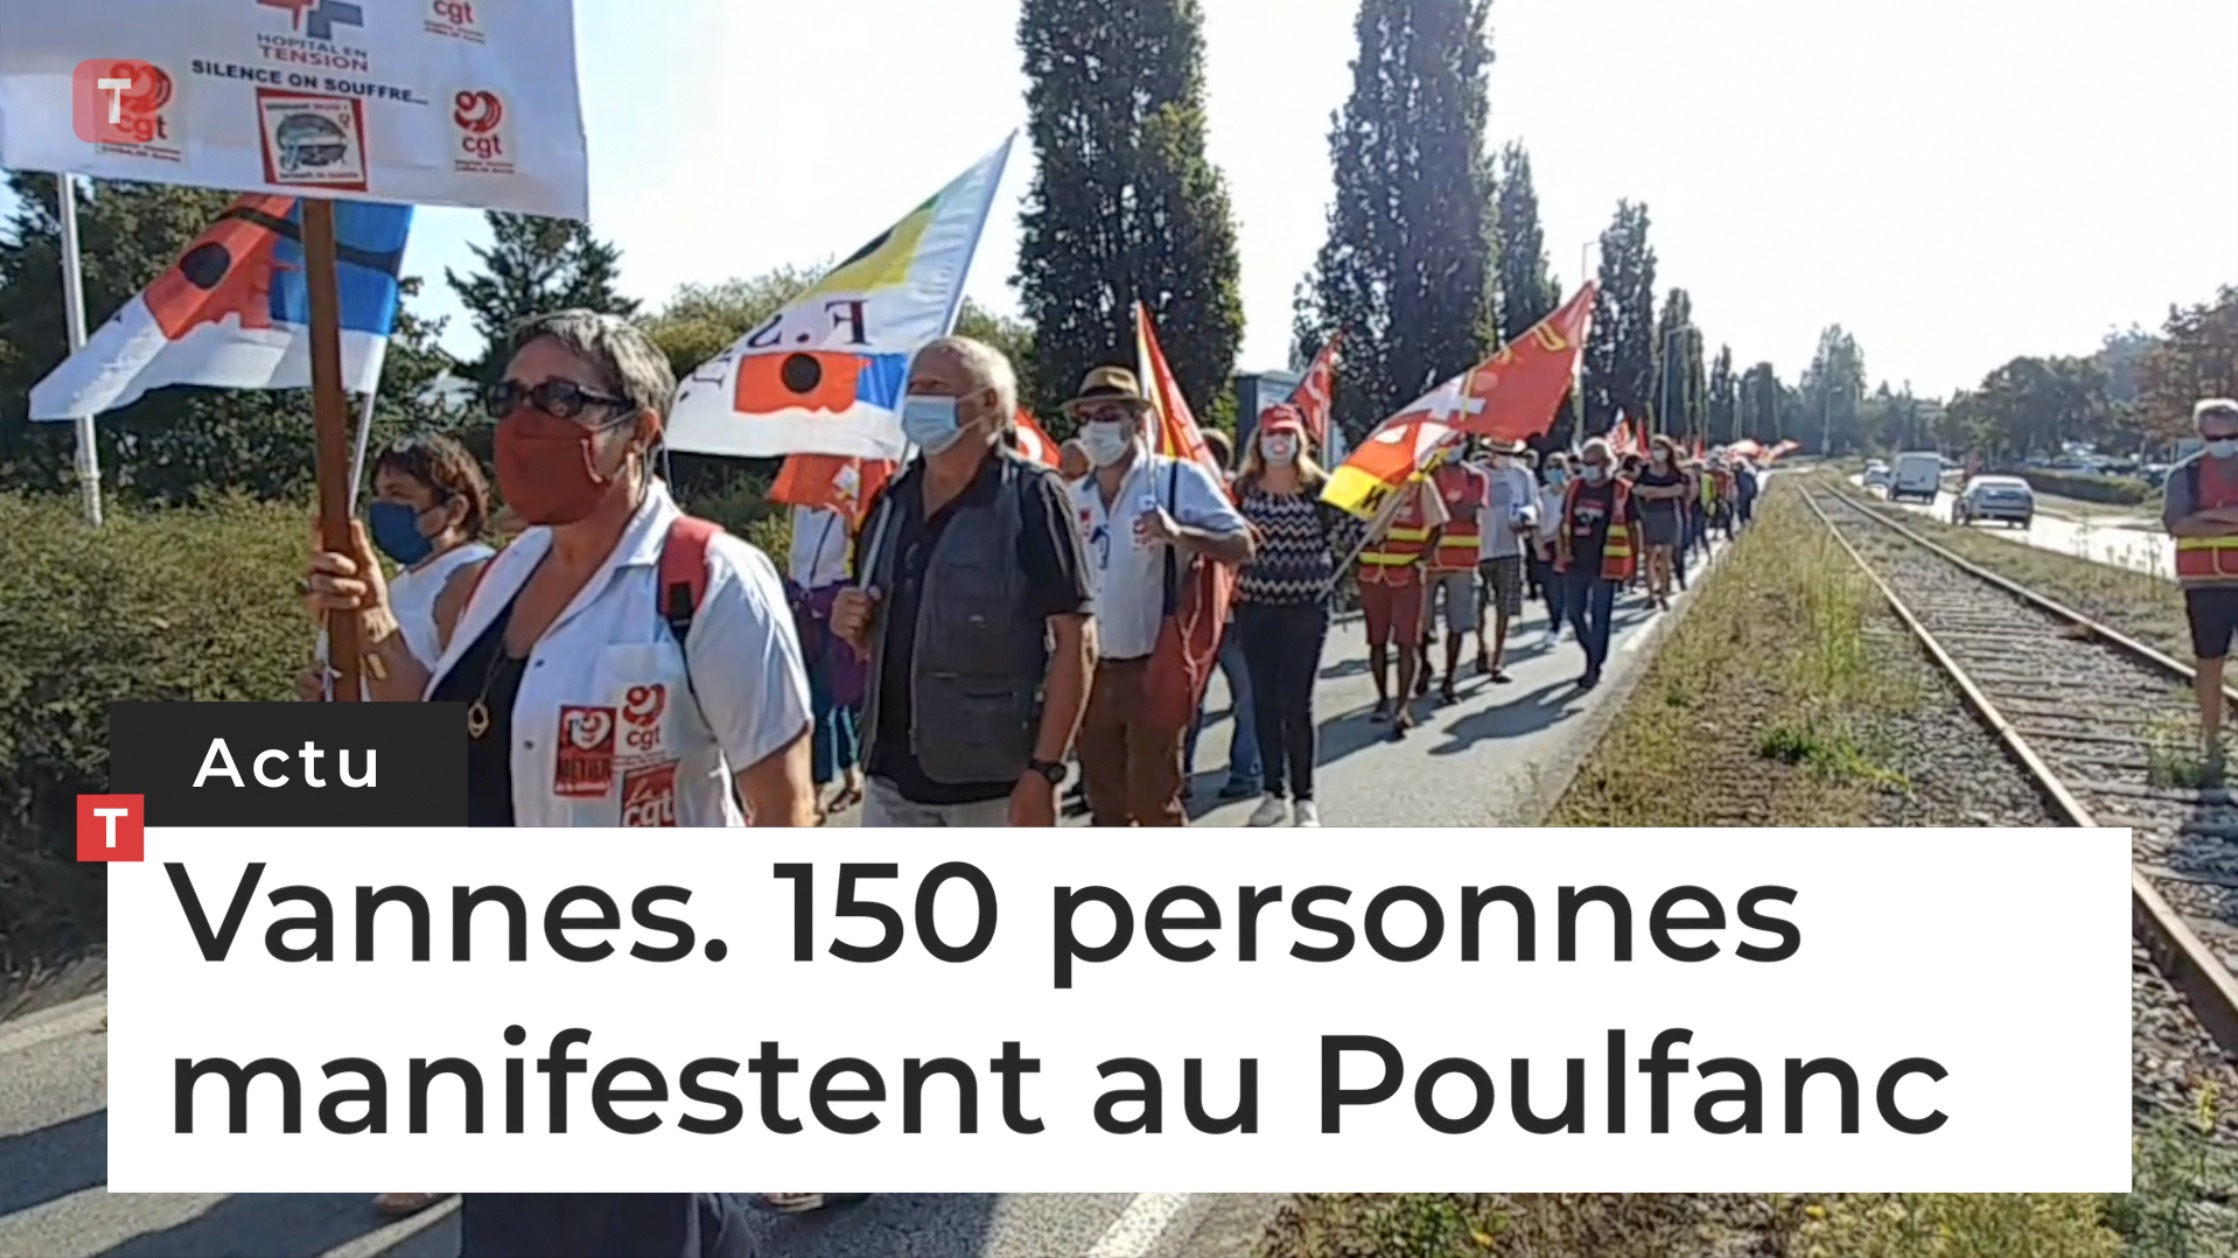 Vannes. 150 personnes manifestent au Poulfanc (Le Télégramme)